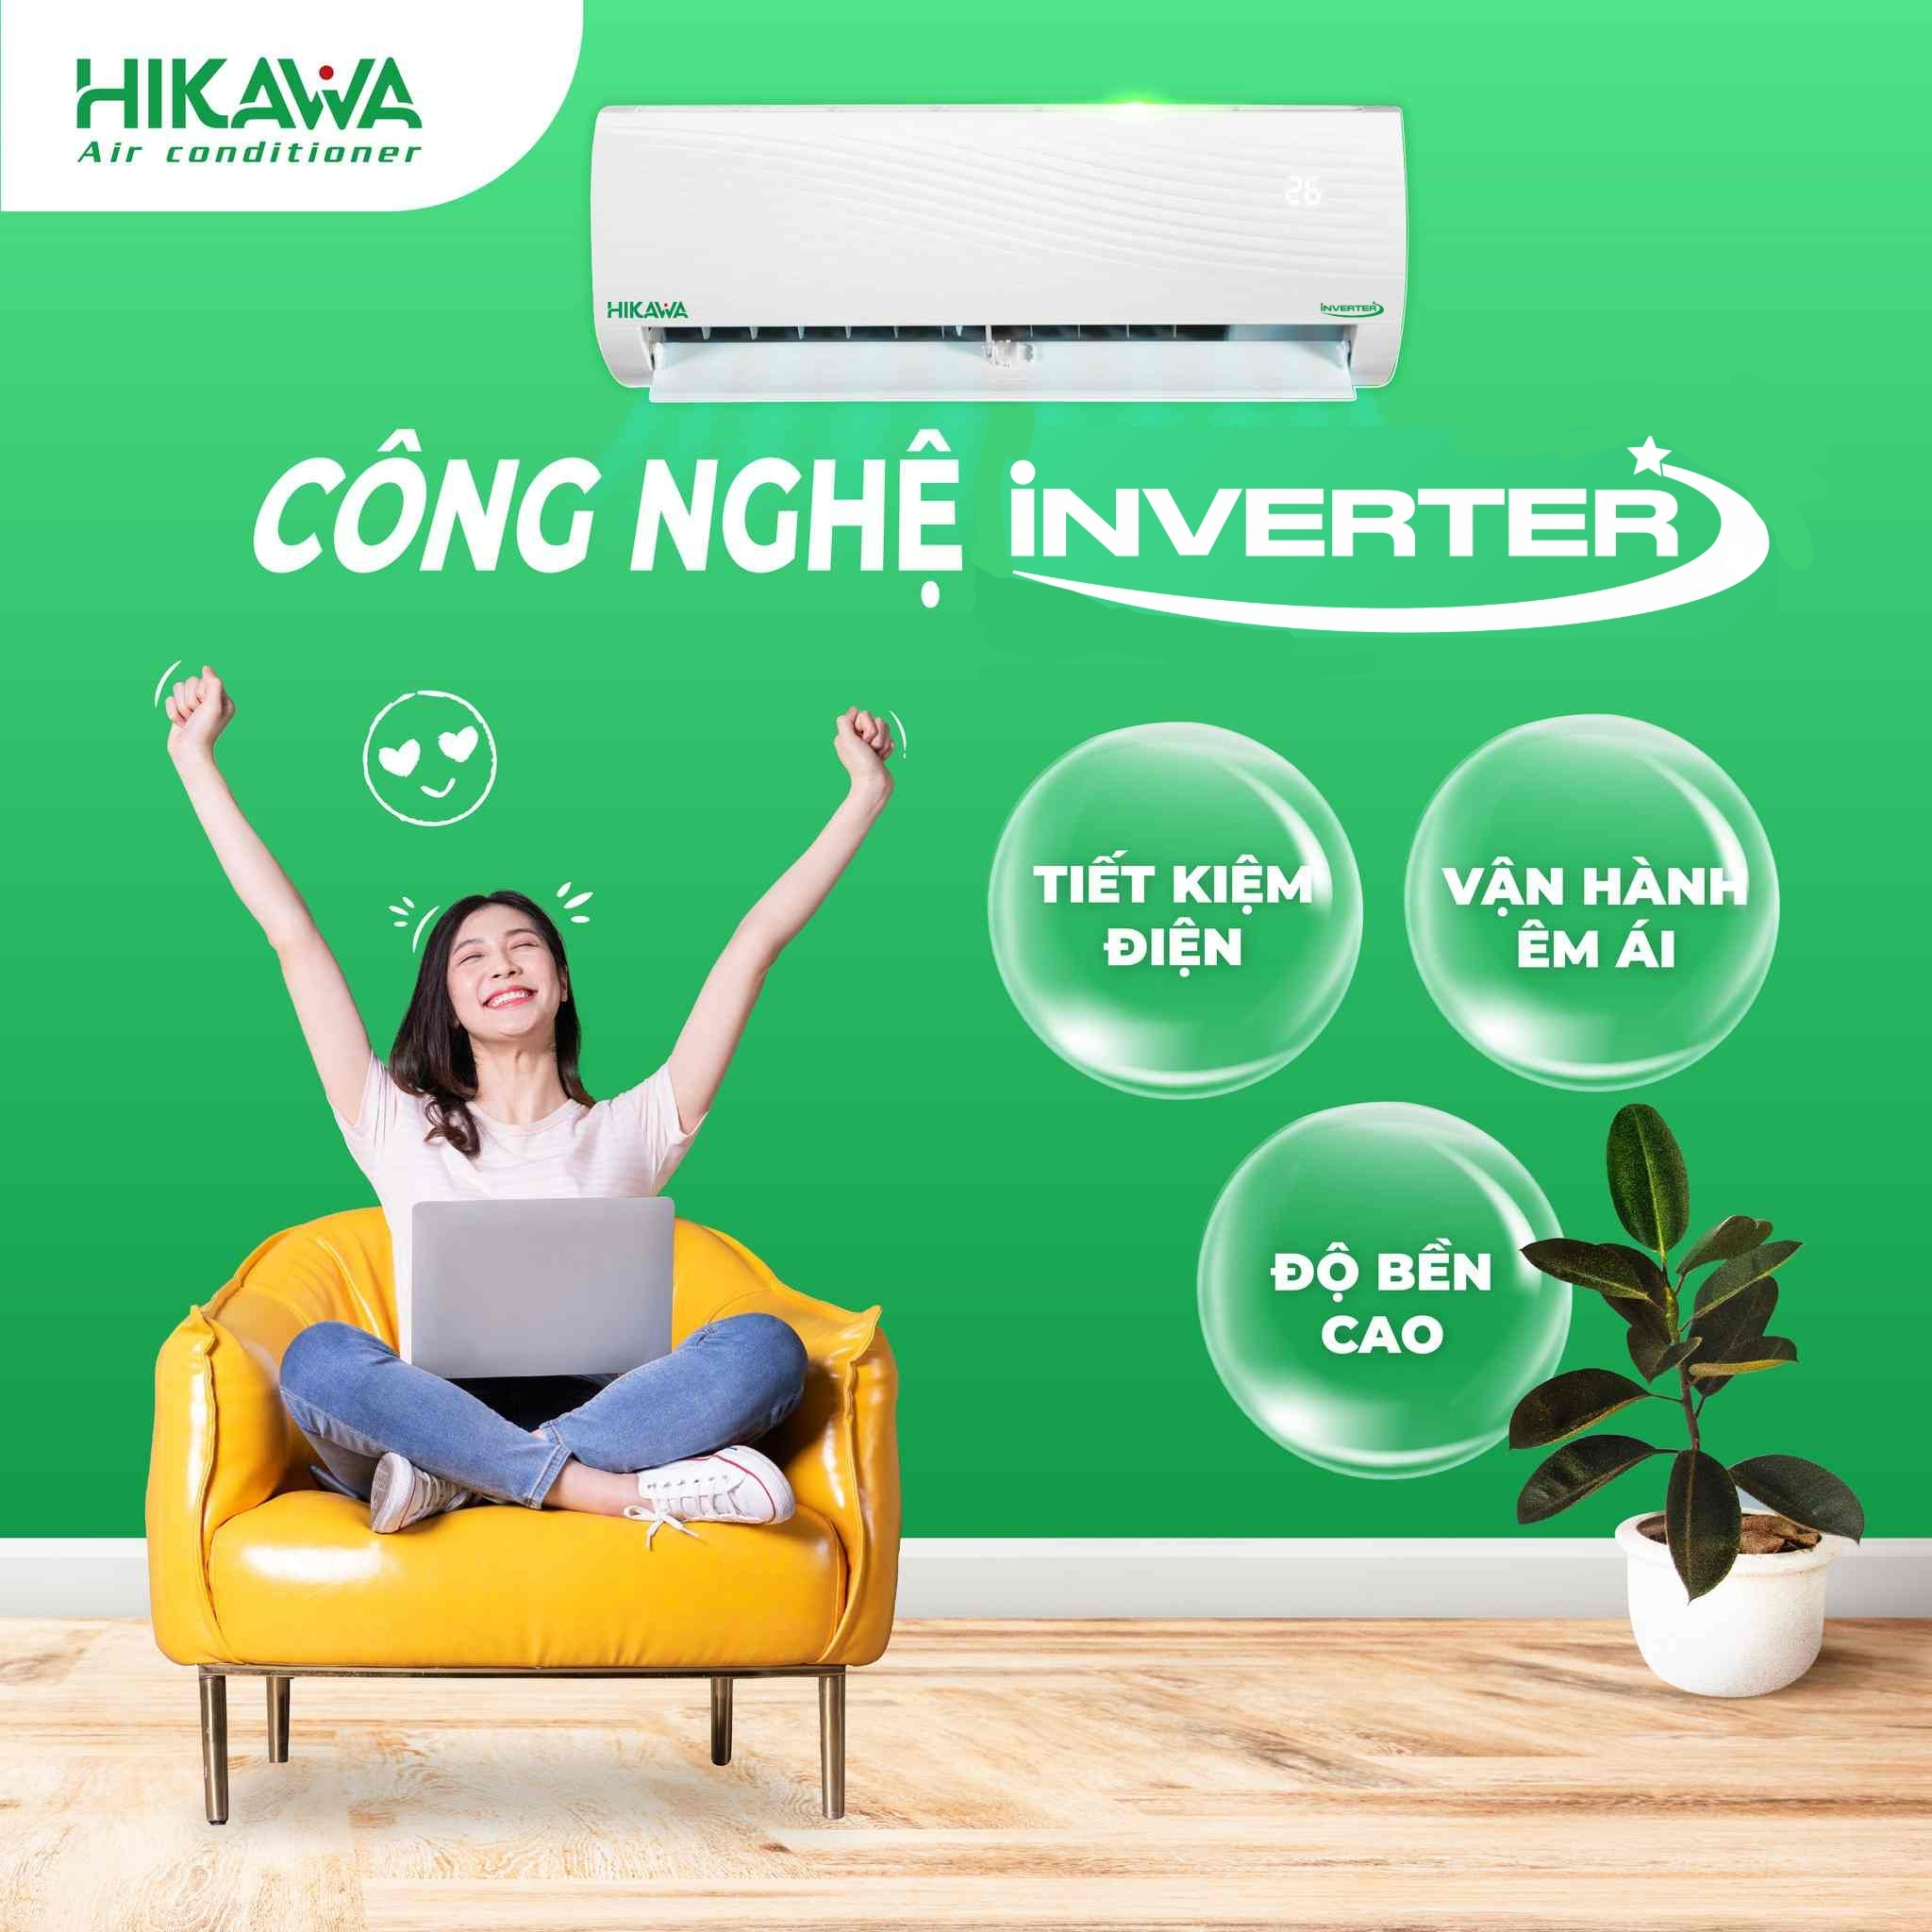 Máy điều hòa HIKAWA Inverter cho phòng khách: Máy điều hòa HIKAWA Inverter là sự lựa chọn tối ưu cho phòng khách của bạn. Không chỉ mang lại không gian mát mẻ, máy điều hòa HIKAWA Inverter còn giúp tiết kiệm điện năng trong quá trình sử dụng. Hãy xem hình ảnh để tìm hiểu thêm về đặc điểm của máy điều hòa này và quyết định cho gia đình của bạn!